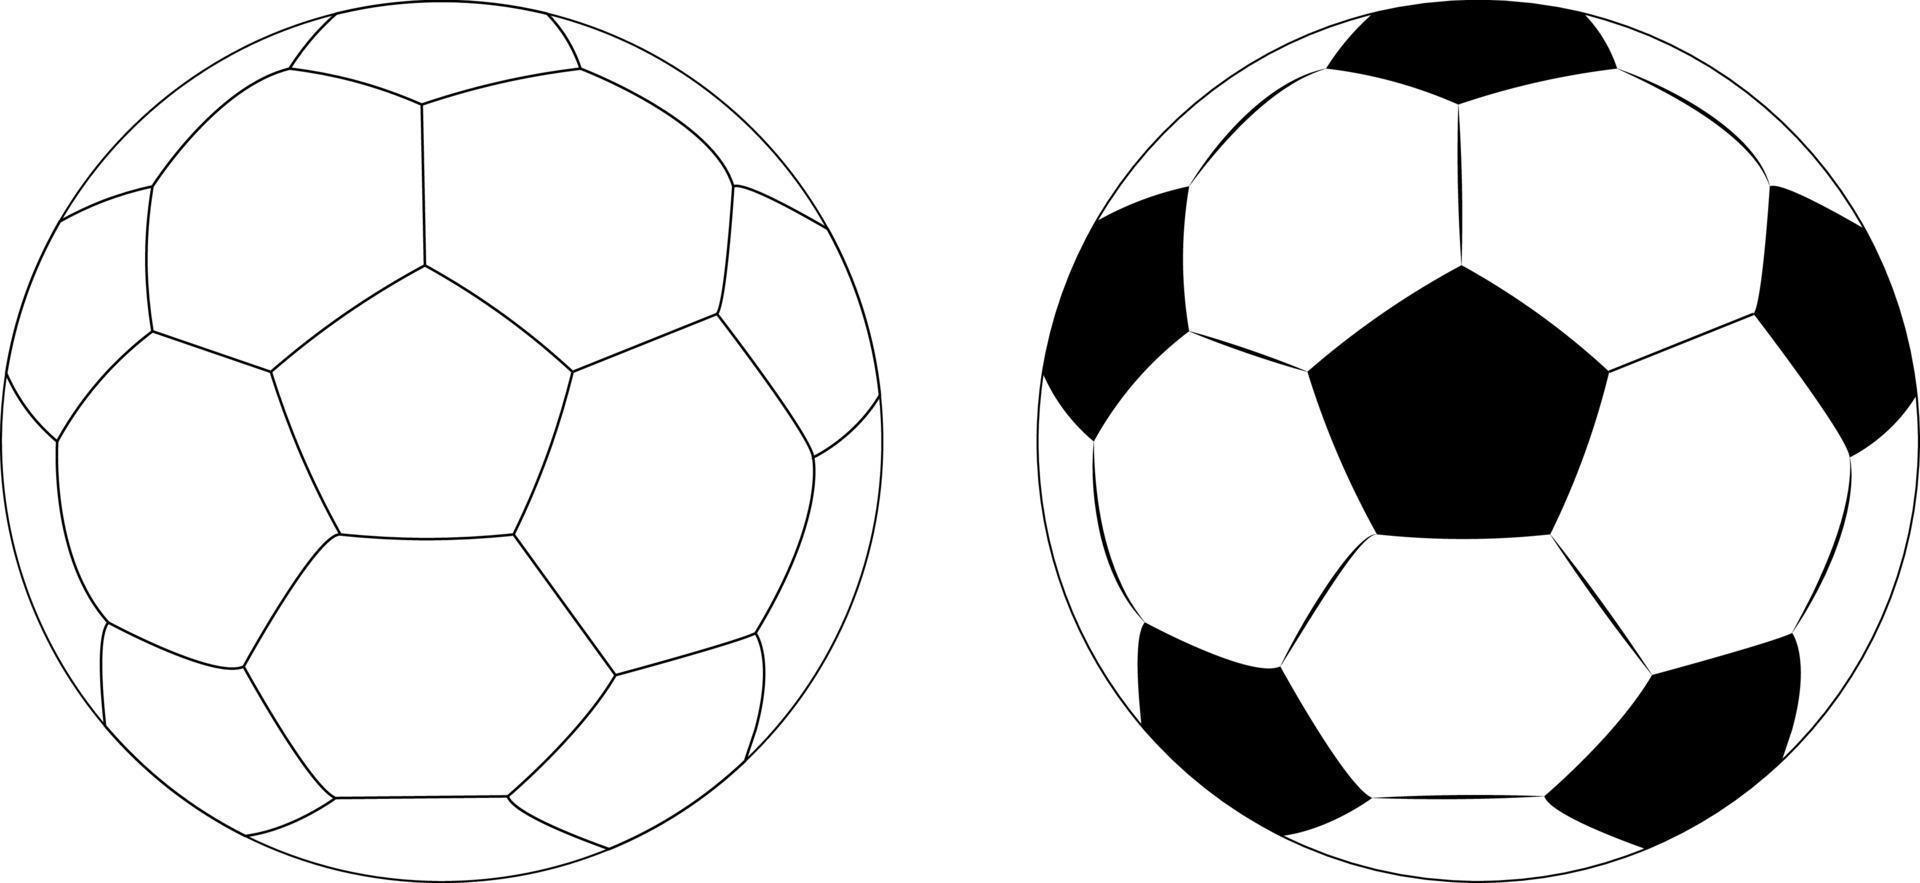 Fußballsymbole in zwei Stilen, Fußballspielsport für den Wettbewerb. professionelles Spielerobjekt. vektorrealistische illustration lokalisiert auf weißem transparentem hintergrund. vektor